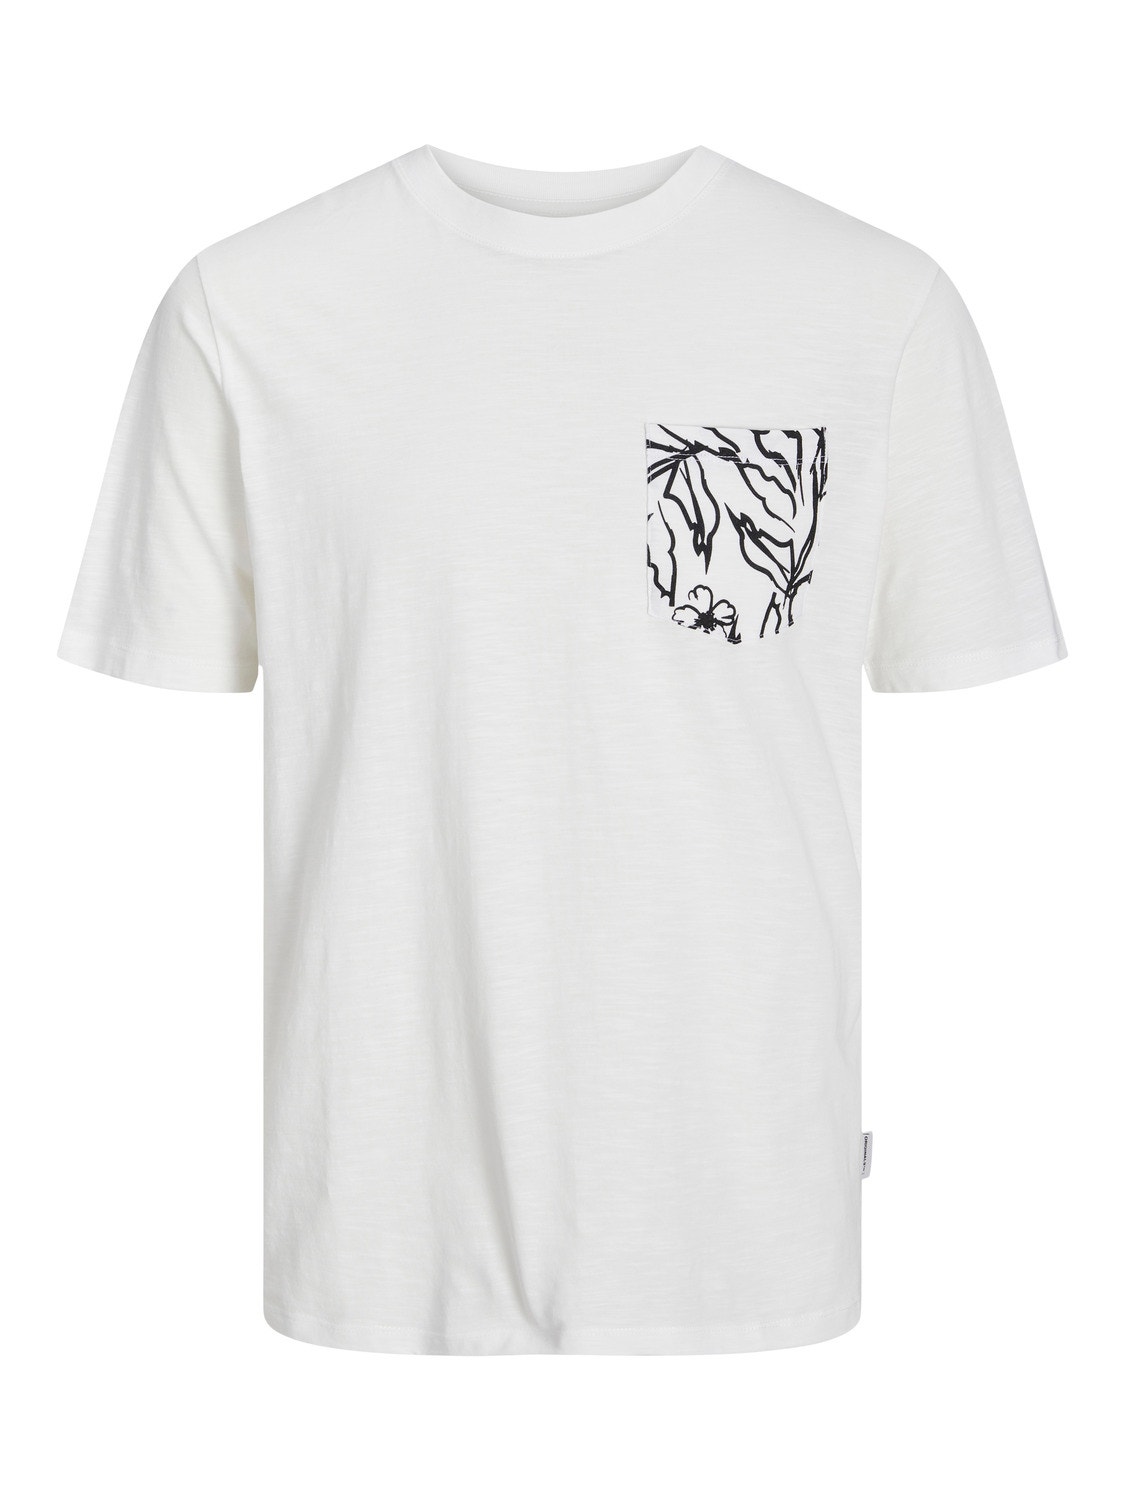 Jack & Jones Printed Crew neck T-shirt -Cloud Dancer - 12250435